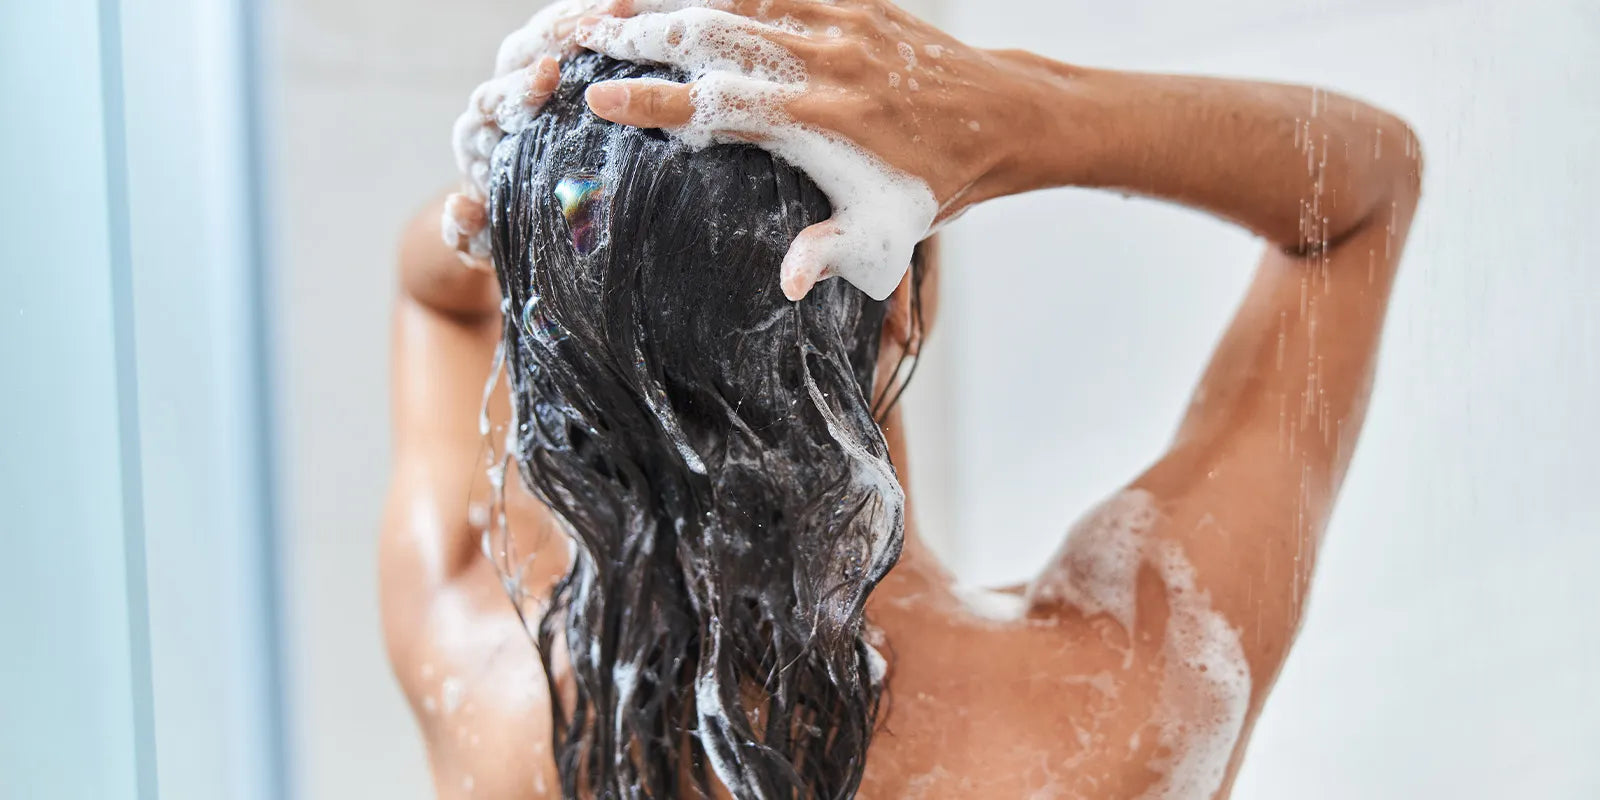 how to use a bar of shampoo